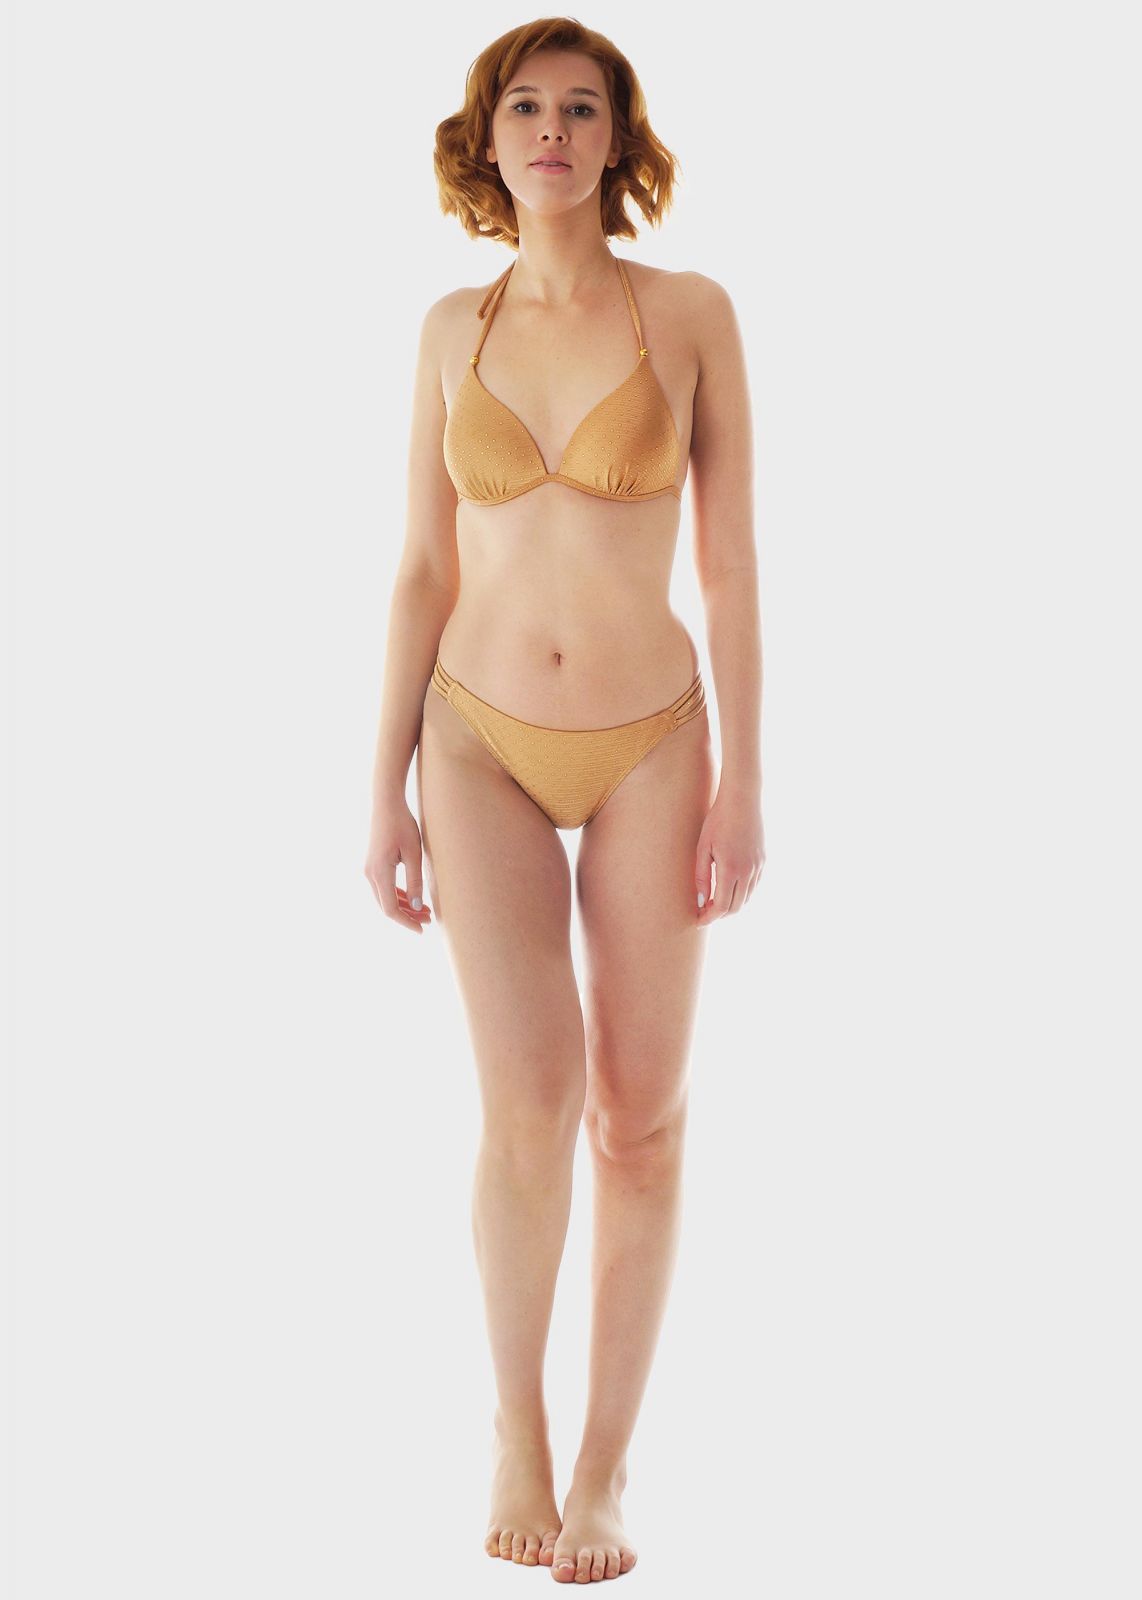 Γυναικείο set μαγιό bikini μονόχρωμο strass εωσωματωμένη ενίσχυση slip brazil.Καλυπτει B CUP SAND